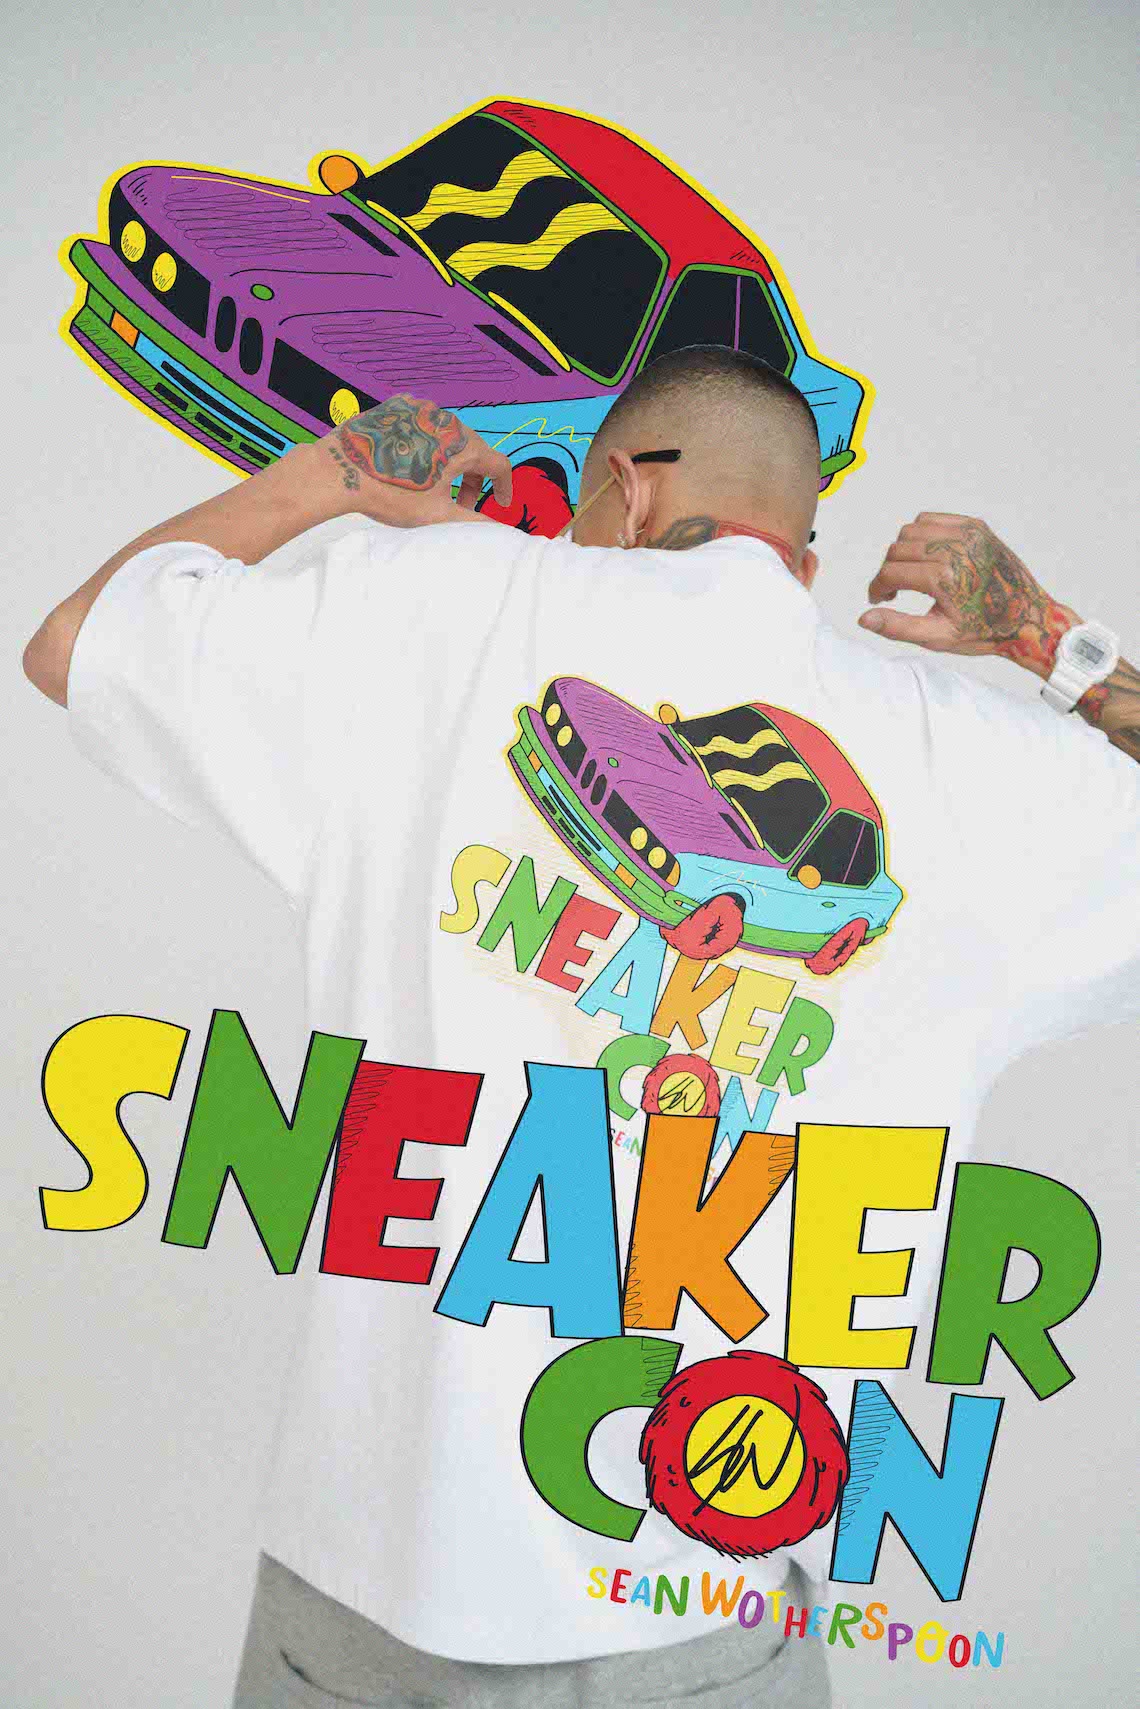 Sneaker Con Shanghai 2020 9